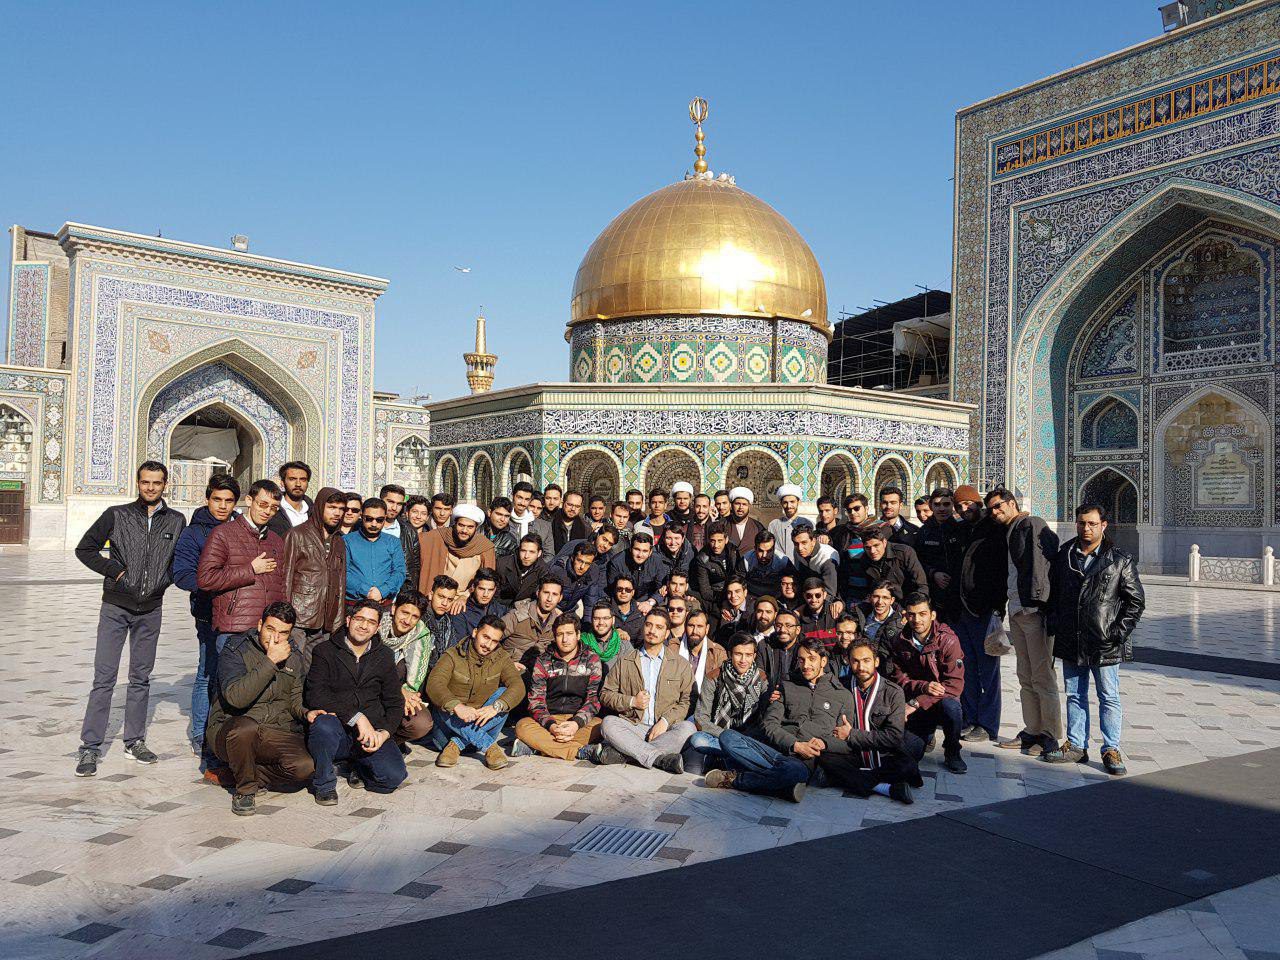 اردوی فرهنگی-زیارتی کبوتر حرم به همت انجمن اسلامی دانشجویان دانشگاه یزد در مشهد مقدس برگزار شد.